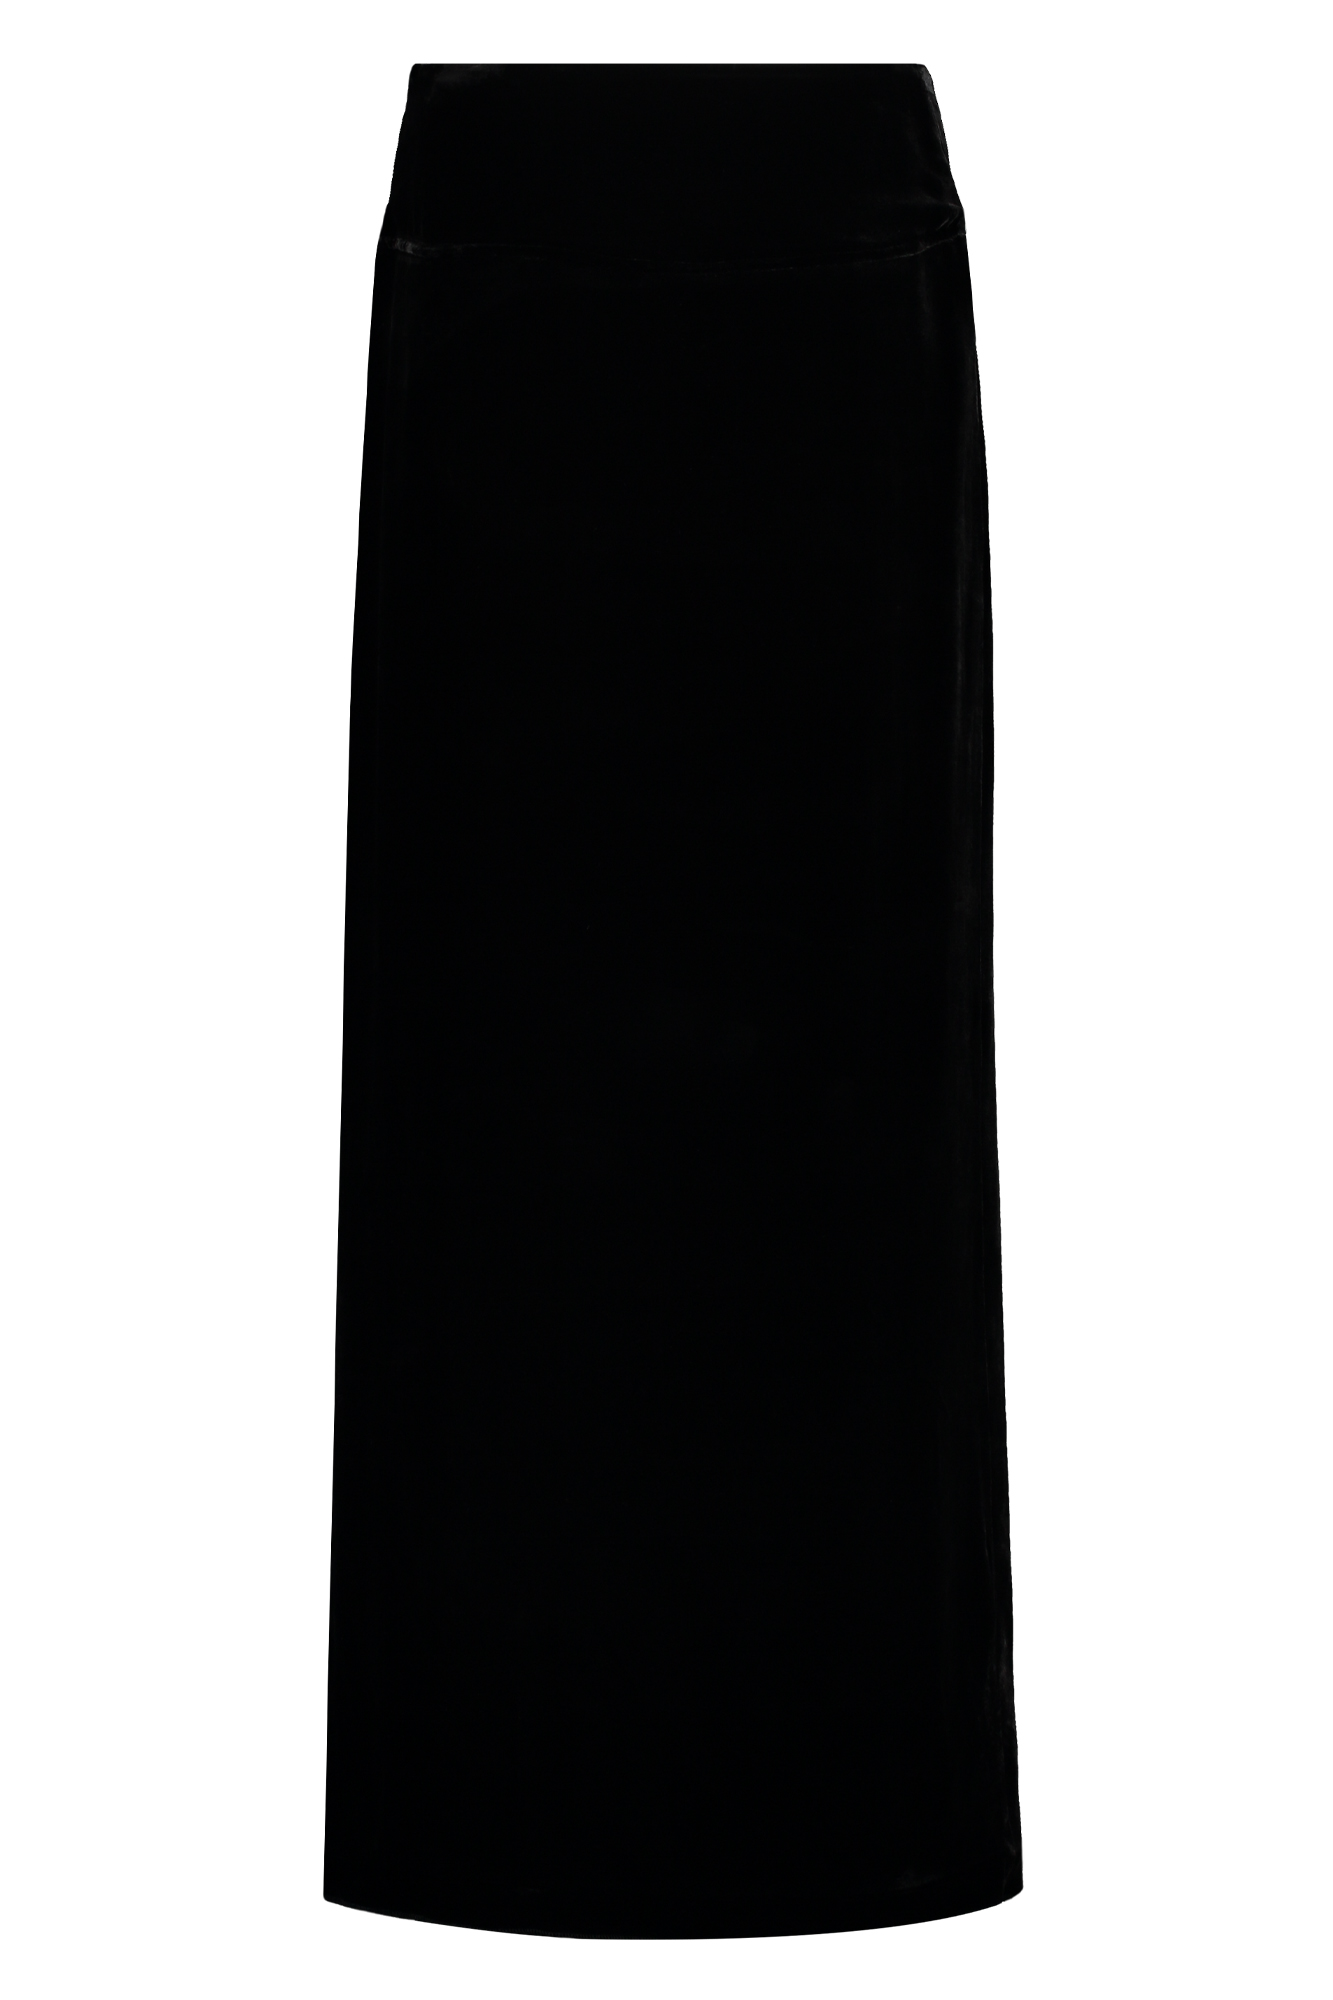 Midden Hijgend Hoes Zwarte lange rok van La-X-Mi | Dames rok velvet zwart